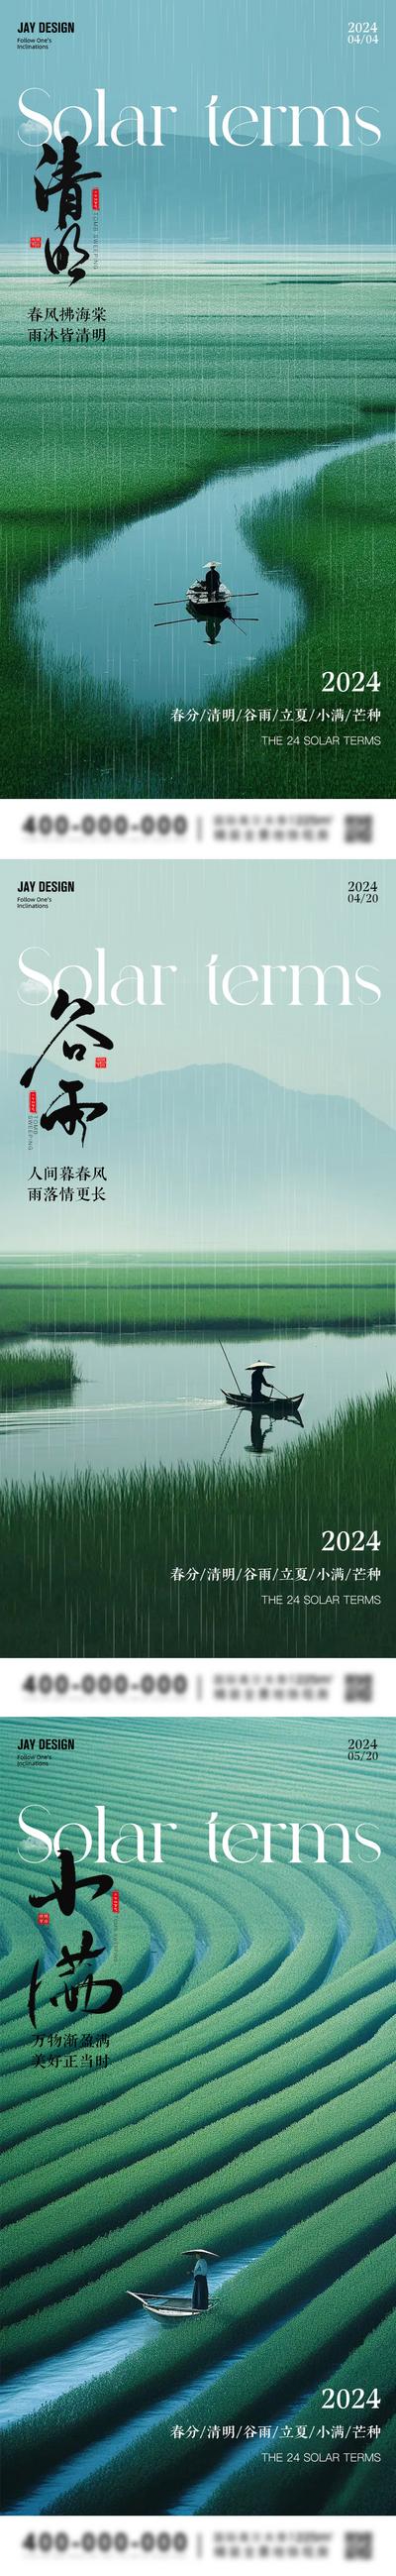 南门网 广告 海报 节气 谷雨 地产 旅游 中式 系列 二十四节气 清明 雨水 小满 文艺 清新 风景